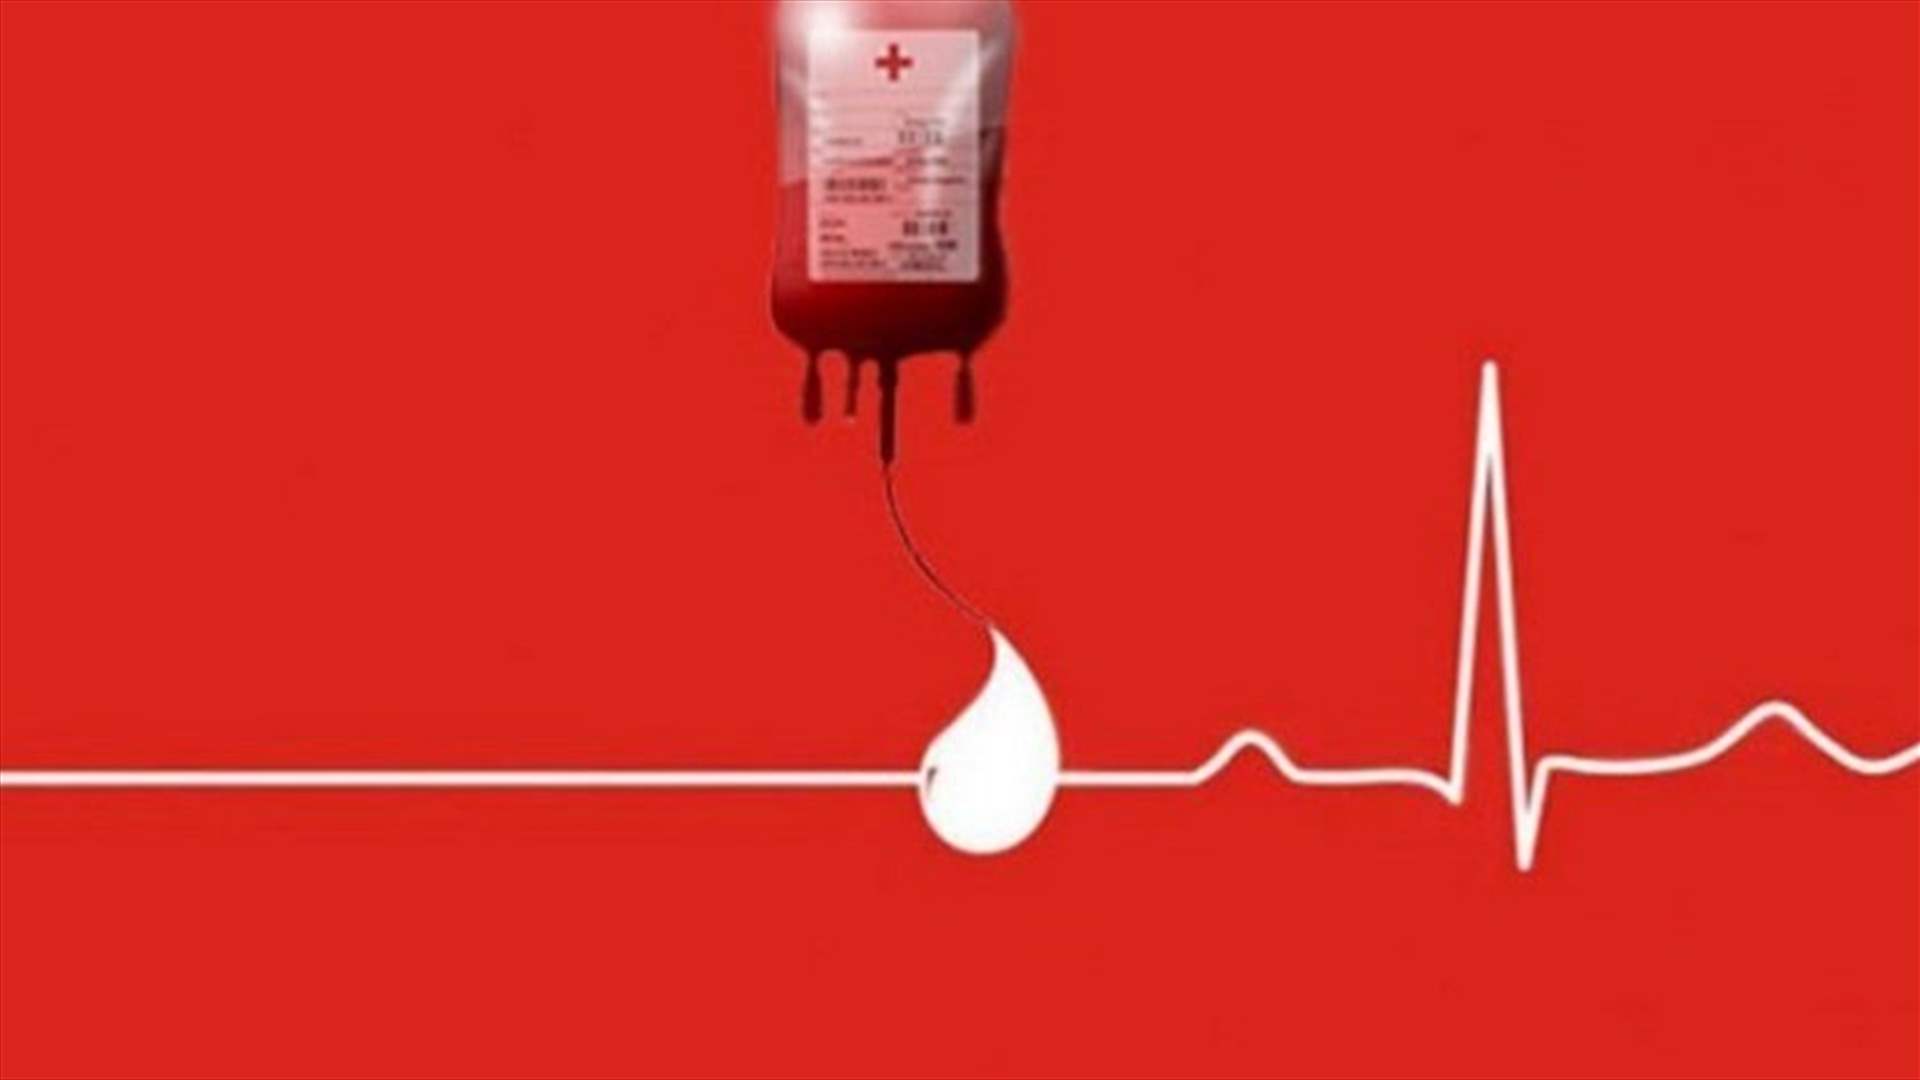 مريض بحاجة الى دم من فئة A+ في مستشفى الجعيتاوي. للتبرع: 70392430